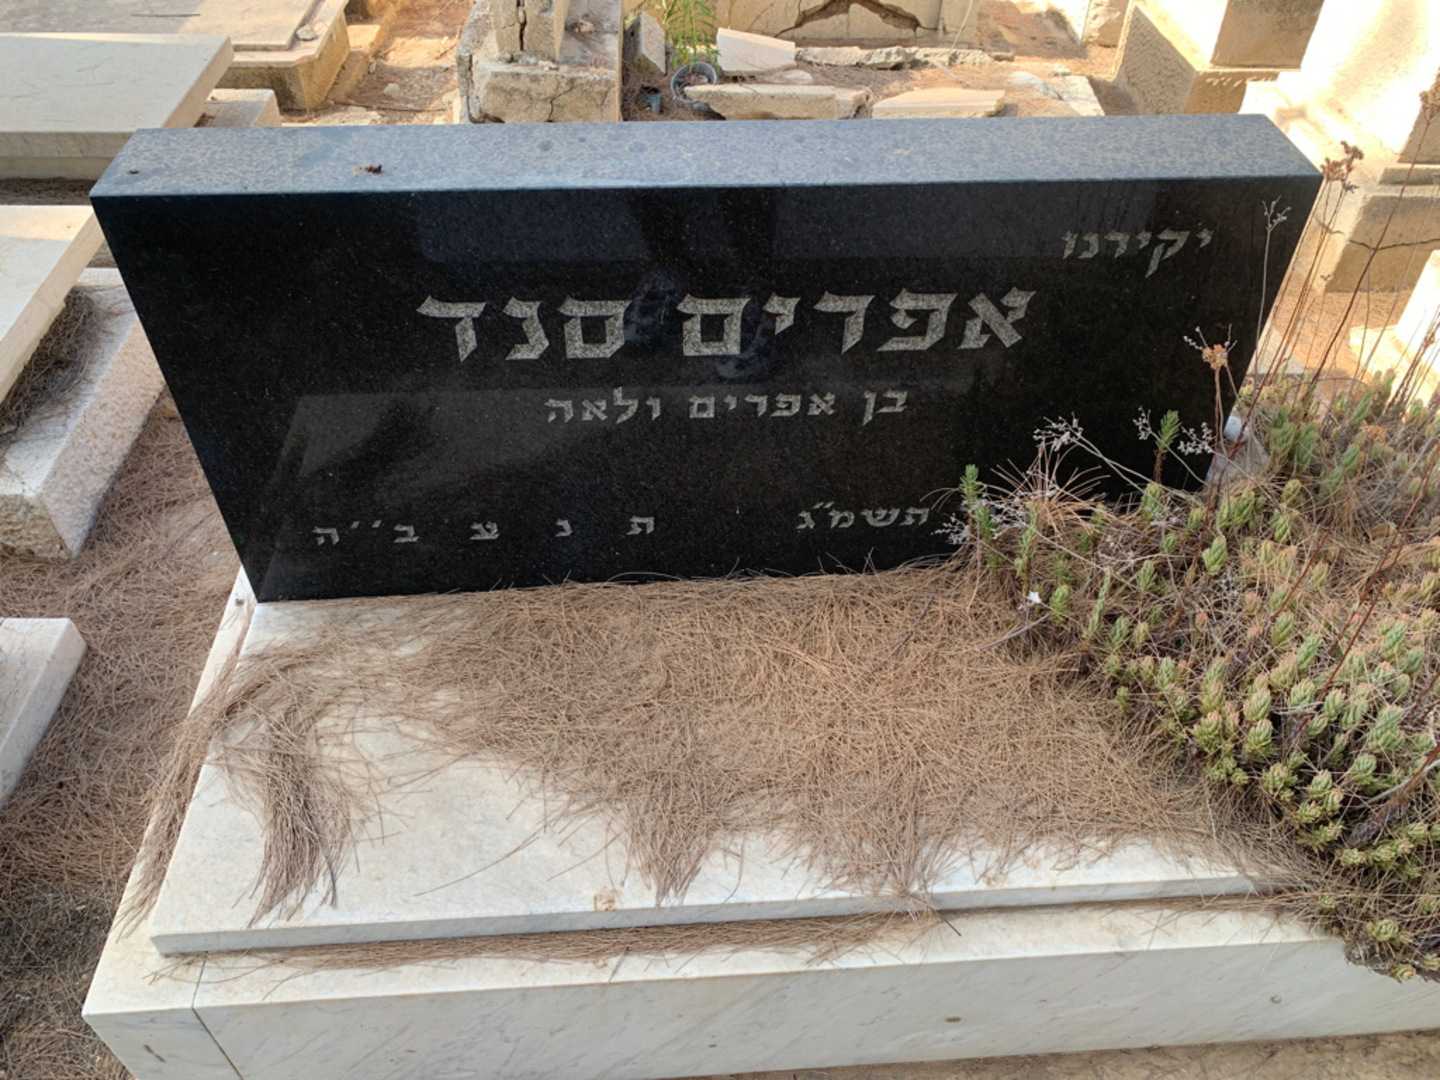 קברו של אפדים סגד